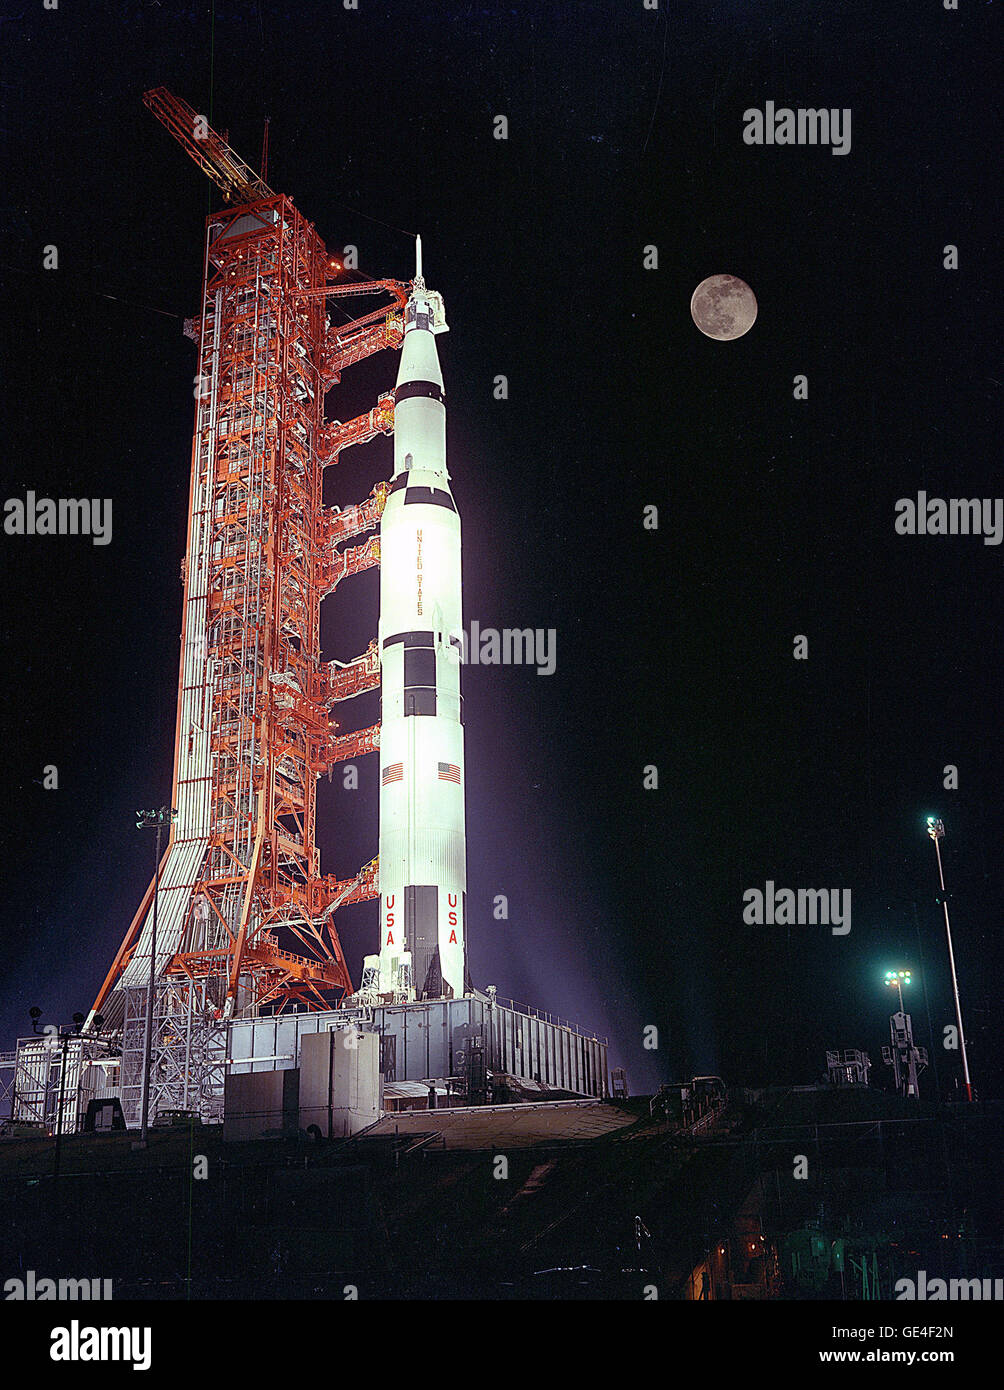 L'Apollo 17 veicolo spaziale si siede in bilico sotto una luna piena sulla rampa di lancio 39A durante il conto alla rovescia per il lancio. Gli astronauti Eugene Cernan A., Comandante; Ronald A. Evans, il pilota del modulo di comando; e il dottor Harrison H. Jack Schmitt, il Modulo Lunare pilota, sarà l'equipaggio per il sesto presidiato di atterraggio lunare di missione. Immagine # : 72C-5901 Foto Stock